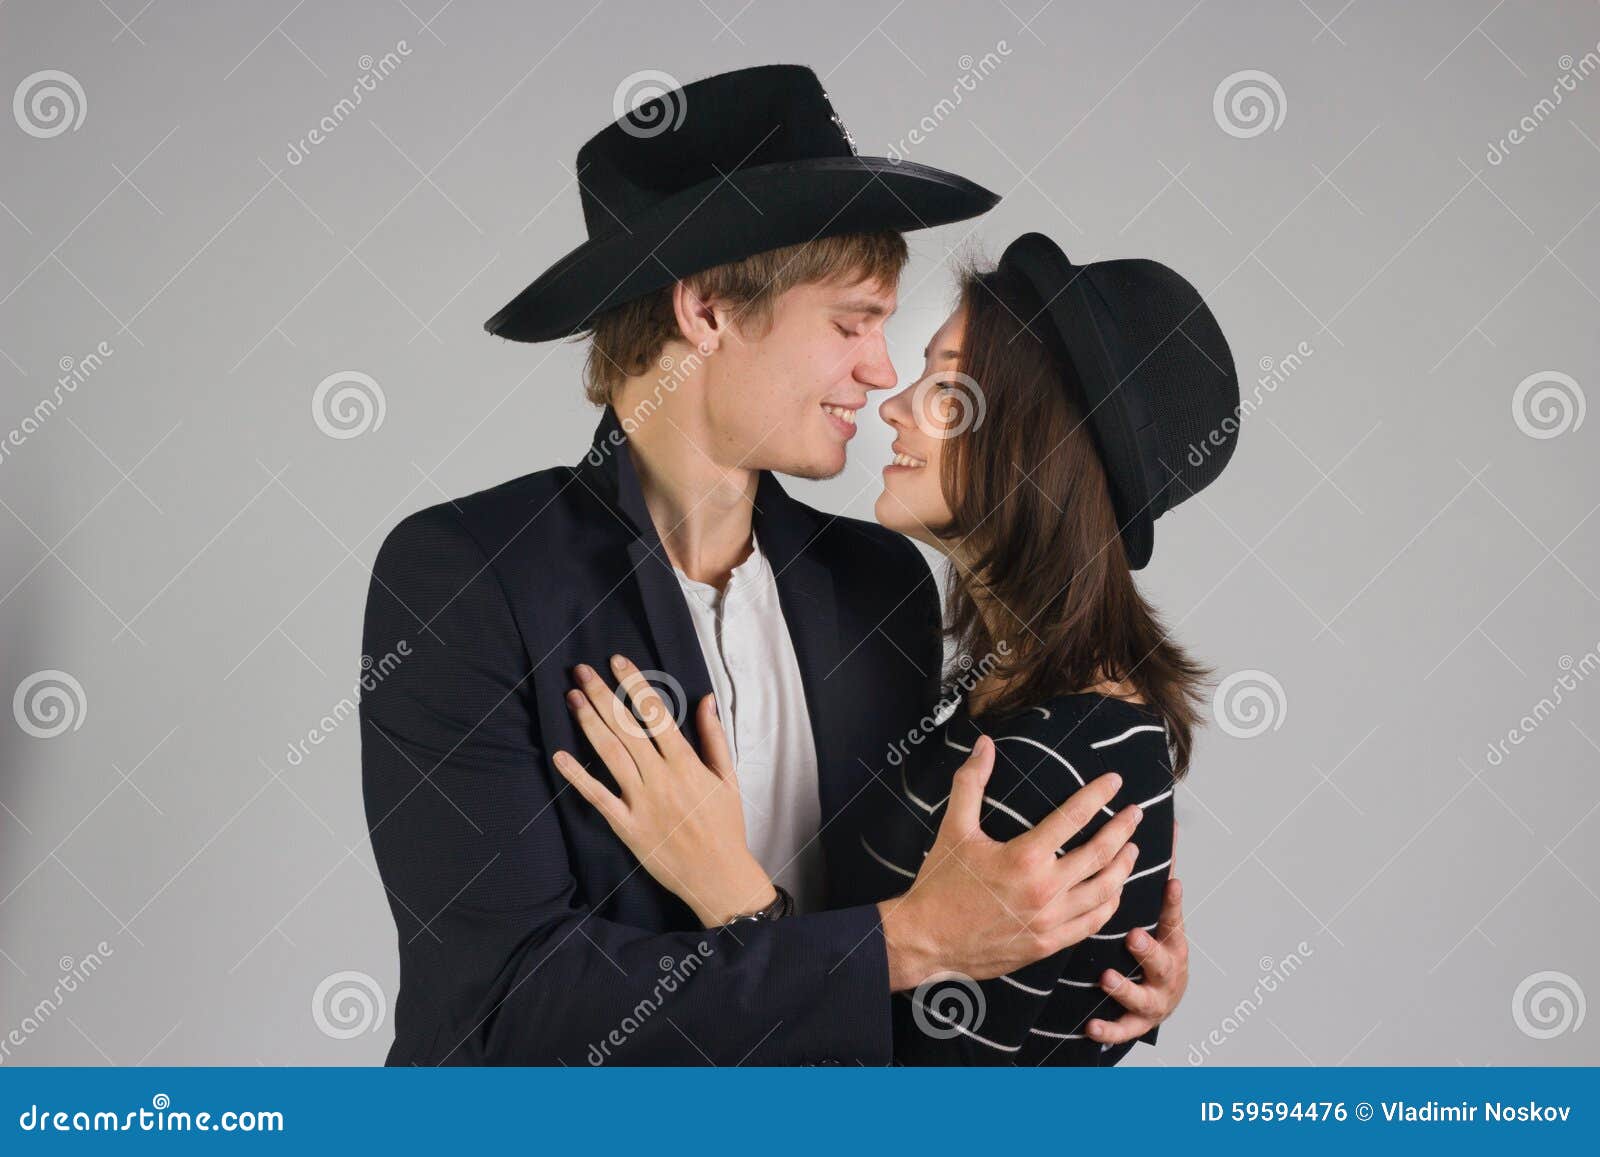 Пары в шляпах. Парочка в шляпках. Фотосессия пары в шляпе в черном. Любовная пара в шляпах. Пара в шляпе в черной одежде.